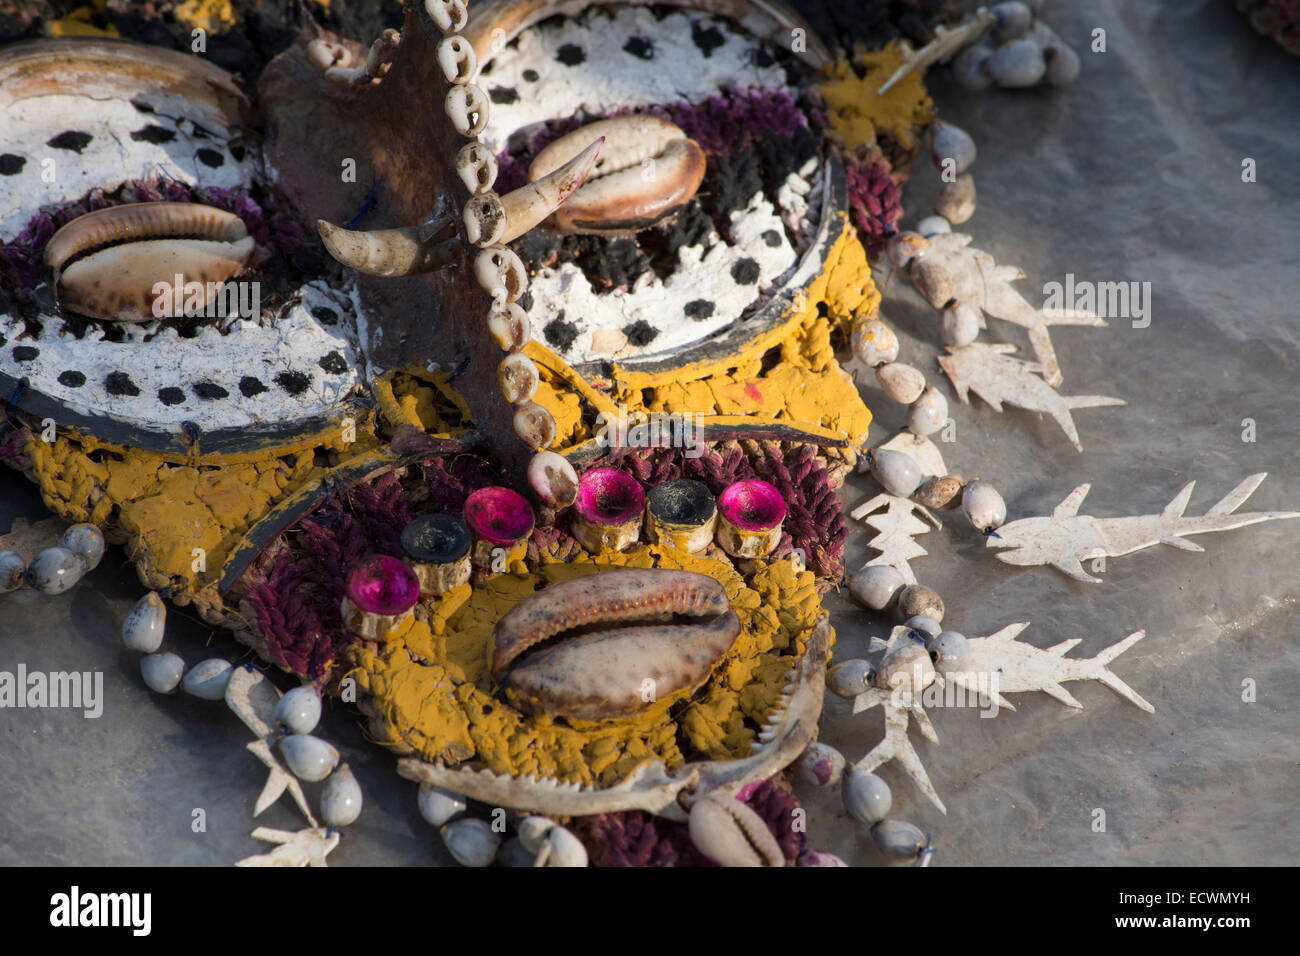 La Melanesia, Papua Nuova Guinea, fiume Sepik area, villaggio di Kopar. Arte popolare maschera di souvenir adornata con conchiglie e dei denti. Foto Stock